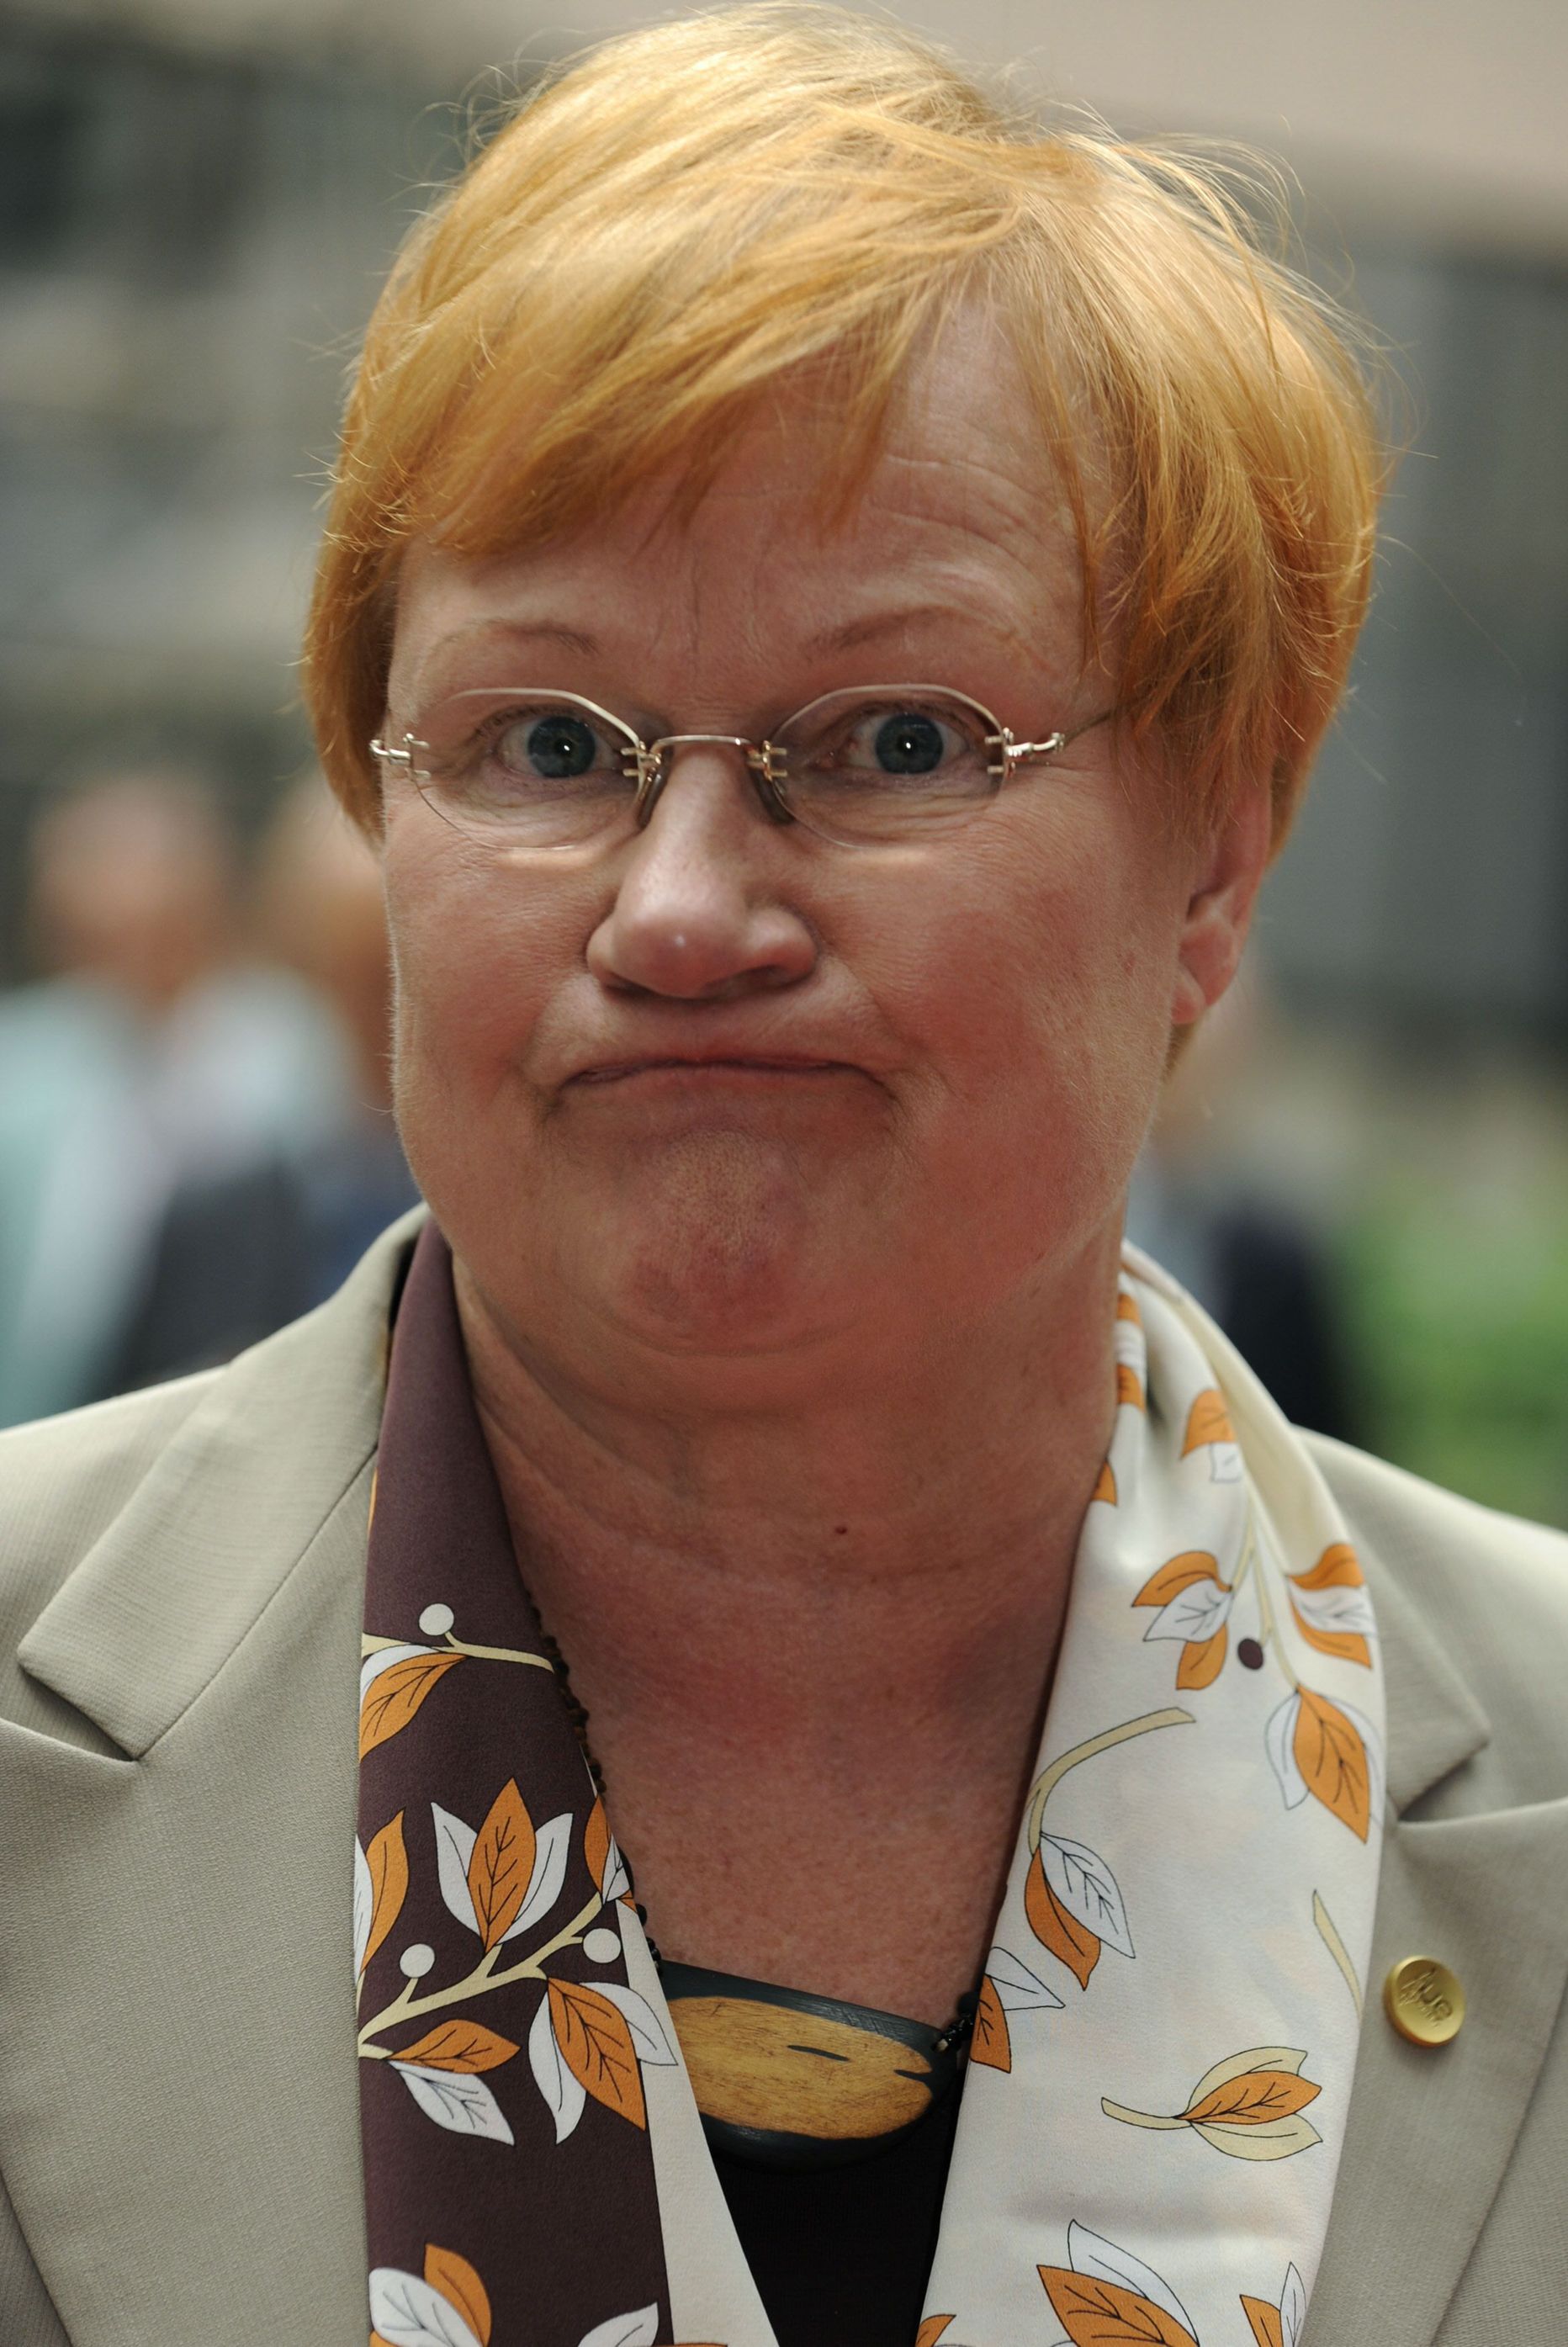 Soome president Tarja Halonen